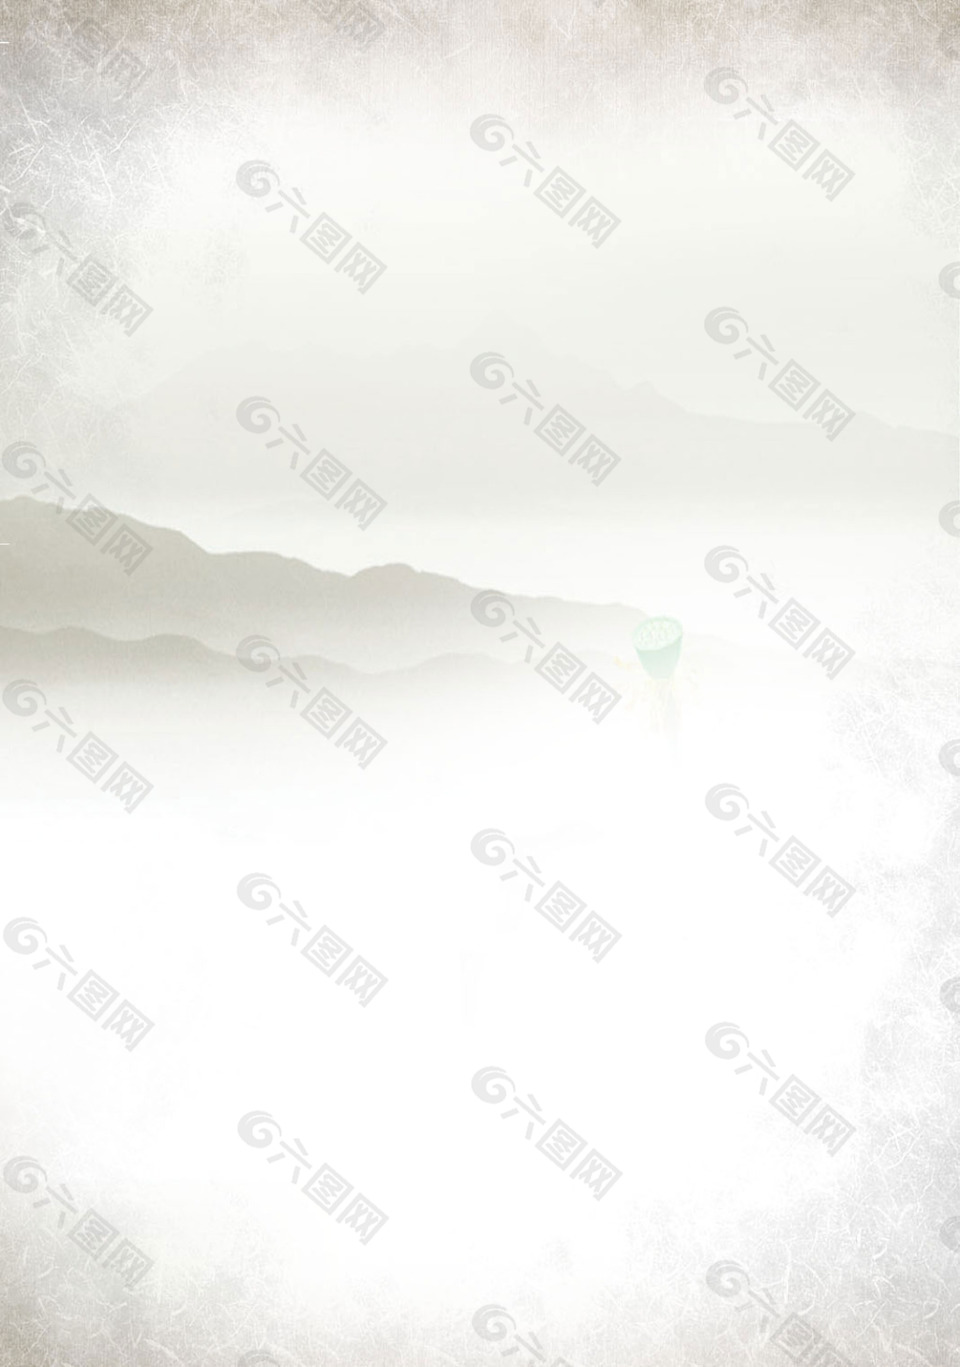 手绘白色山脉H5背景素材